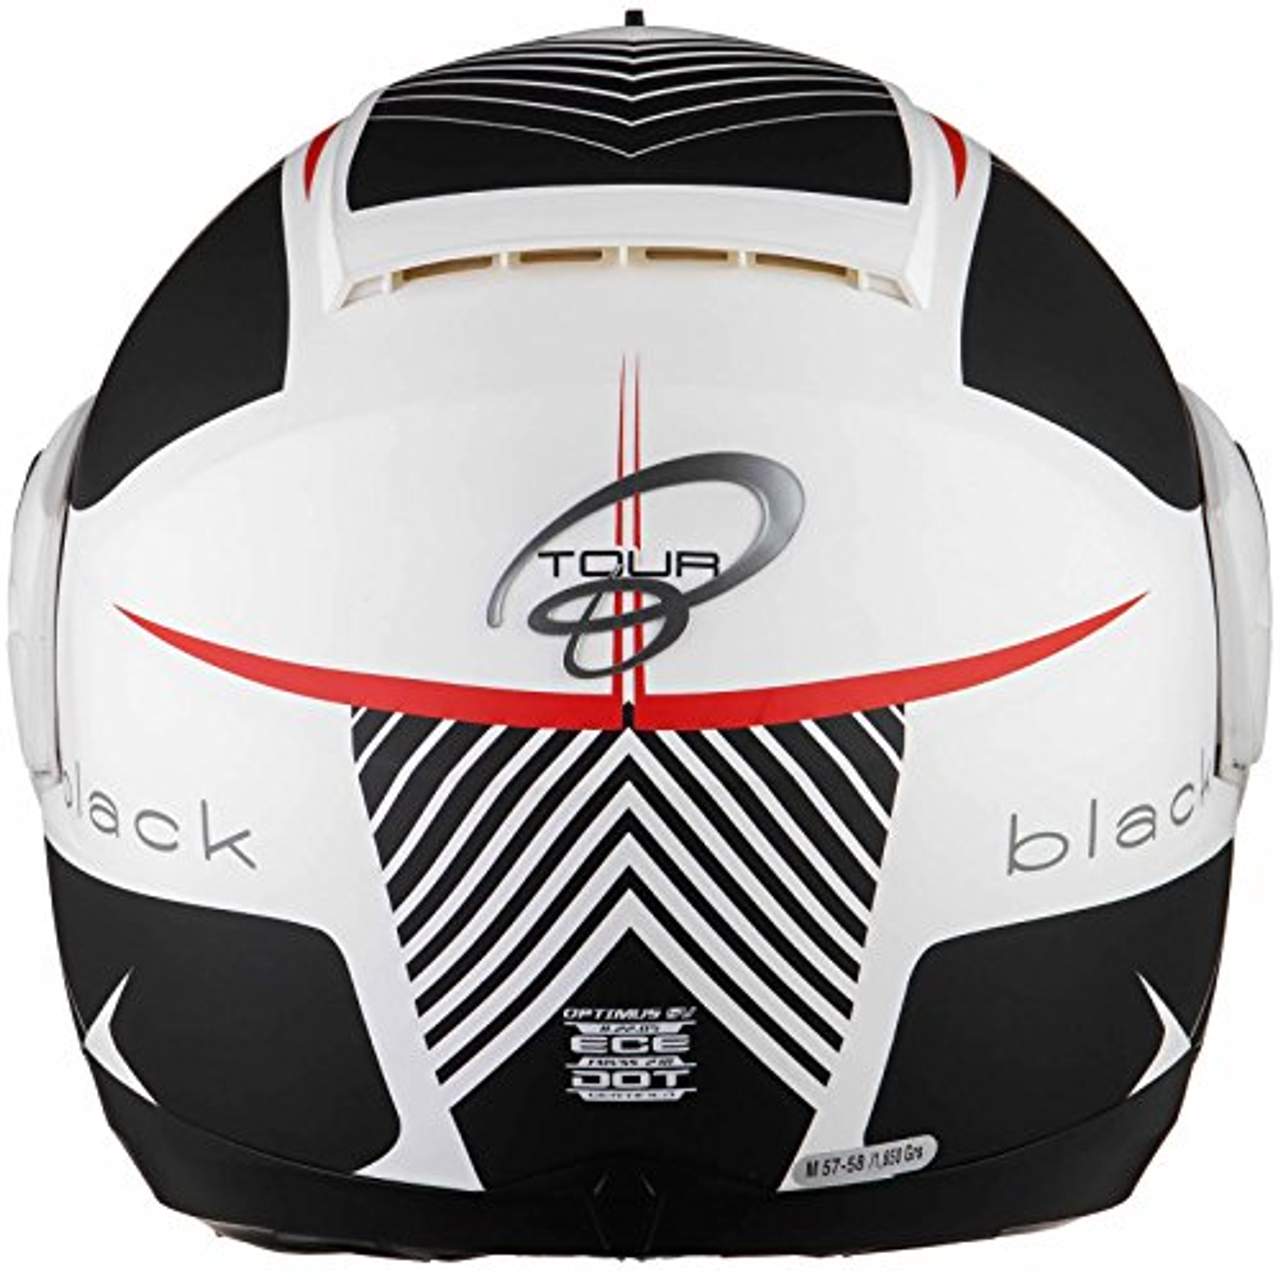 BLACK Optimus SV Tour Motorrad Roller Klapphelm L Matt White Red Grey